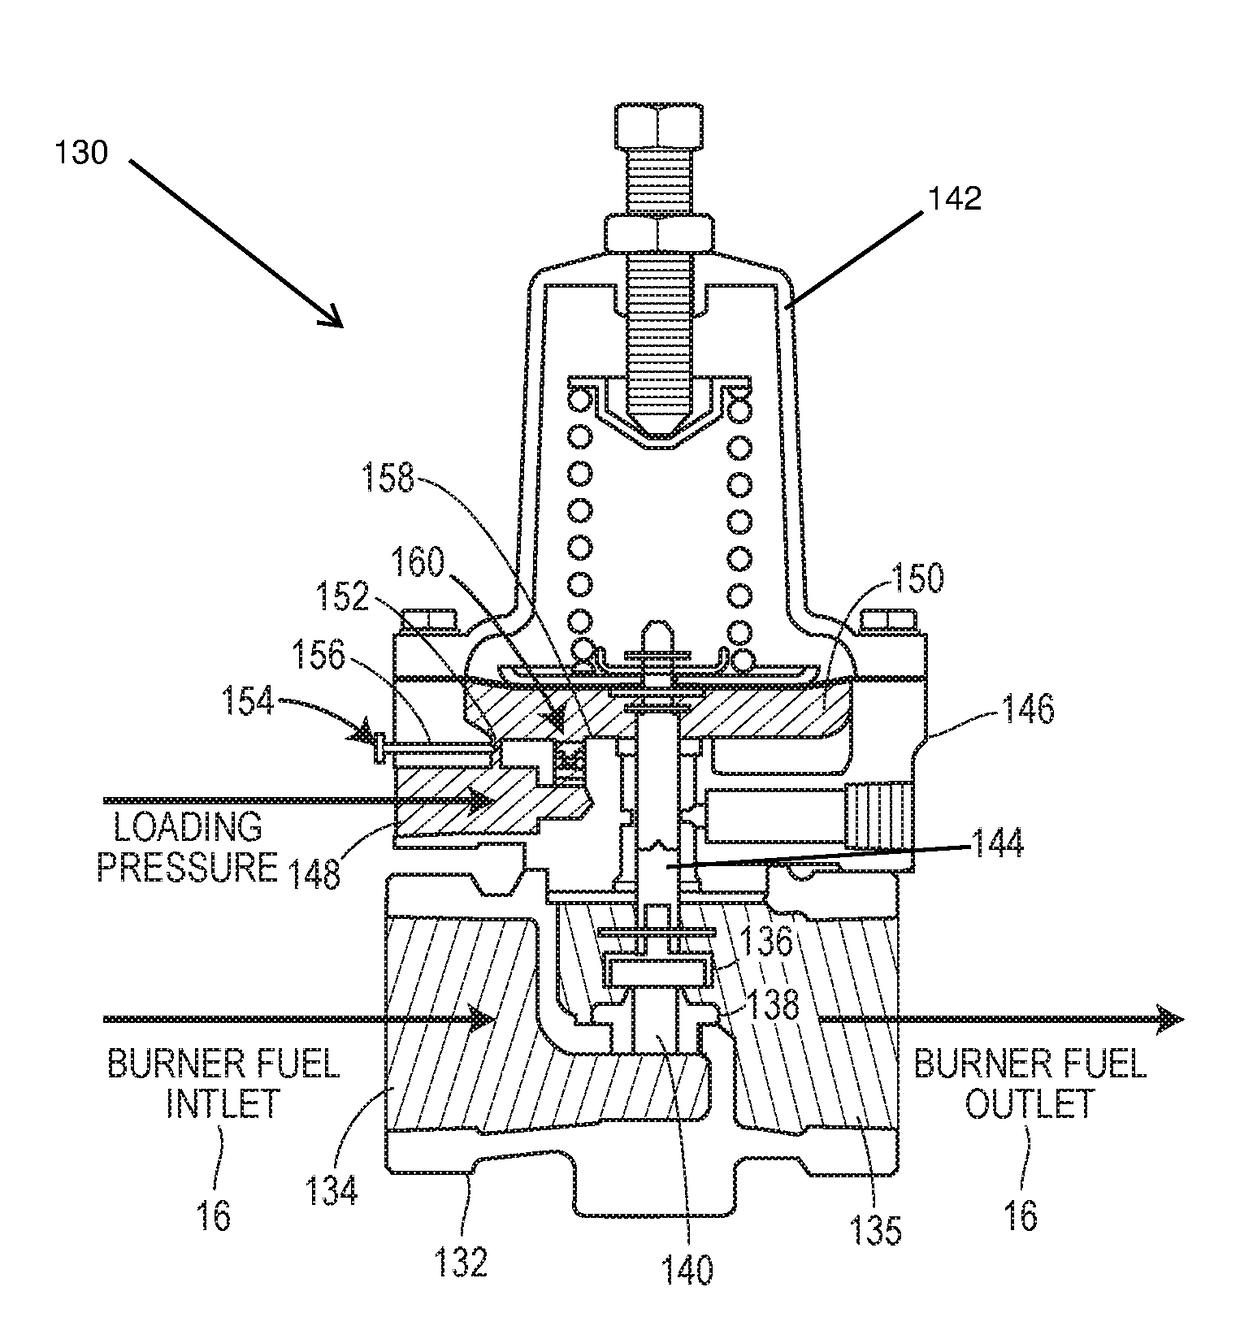 Adjustable burner control valve